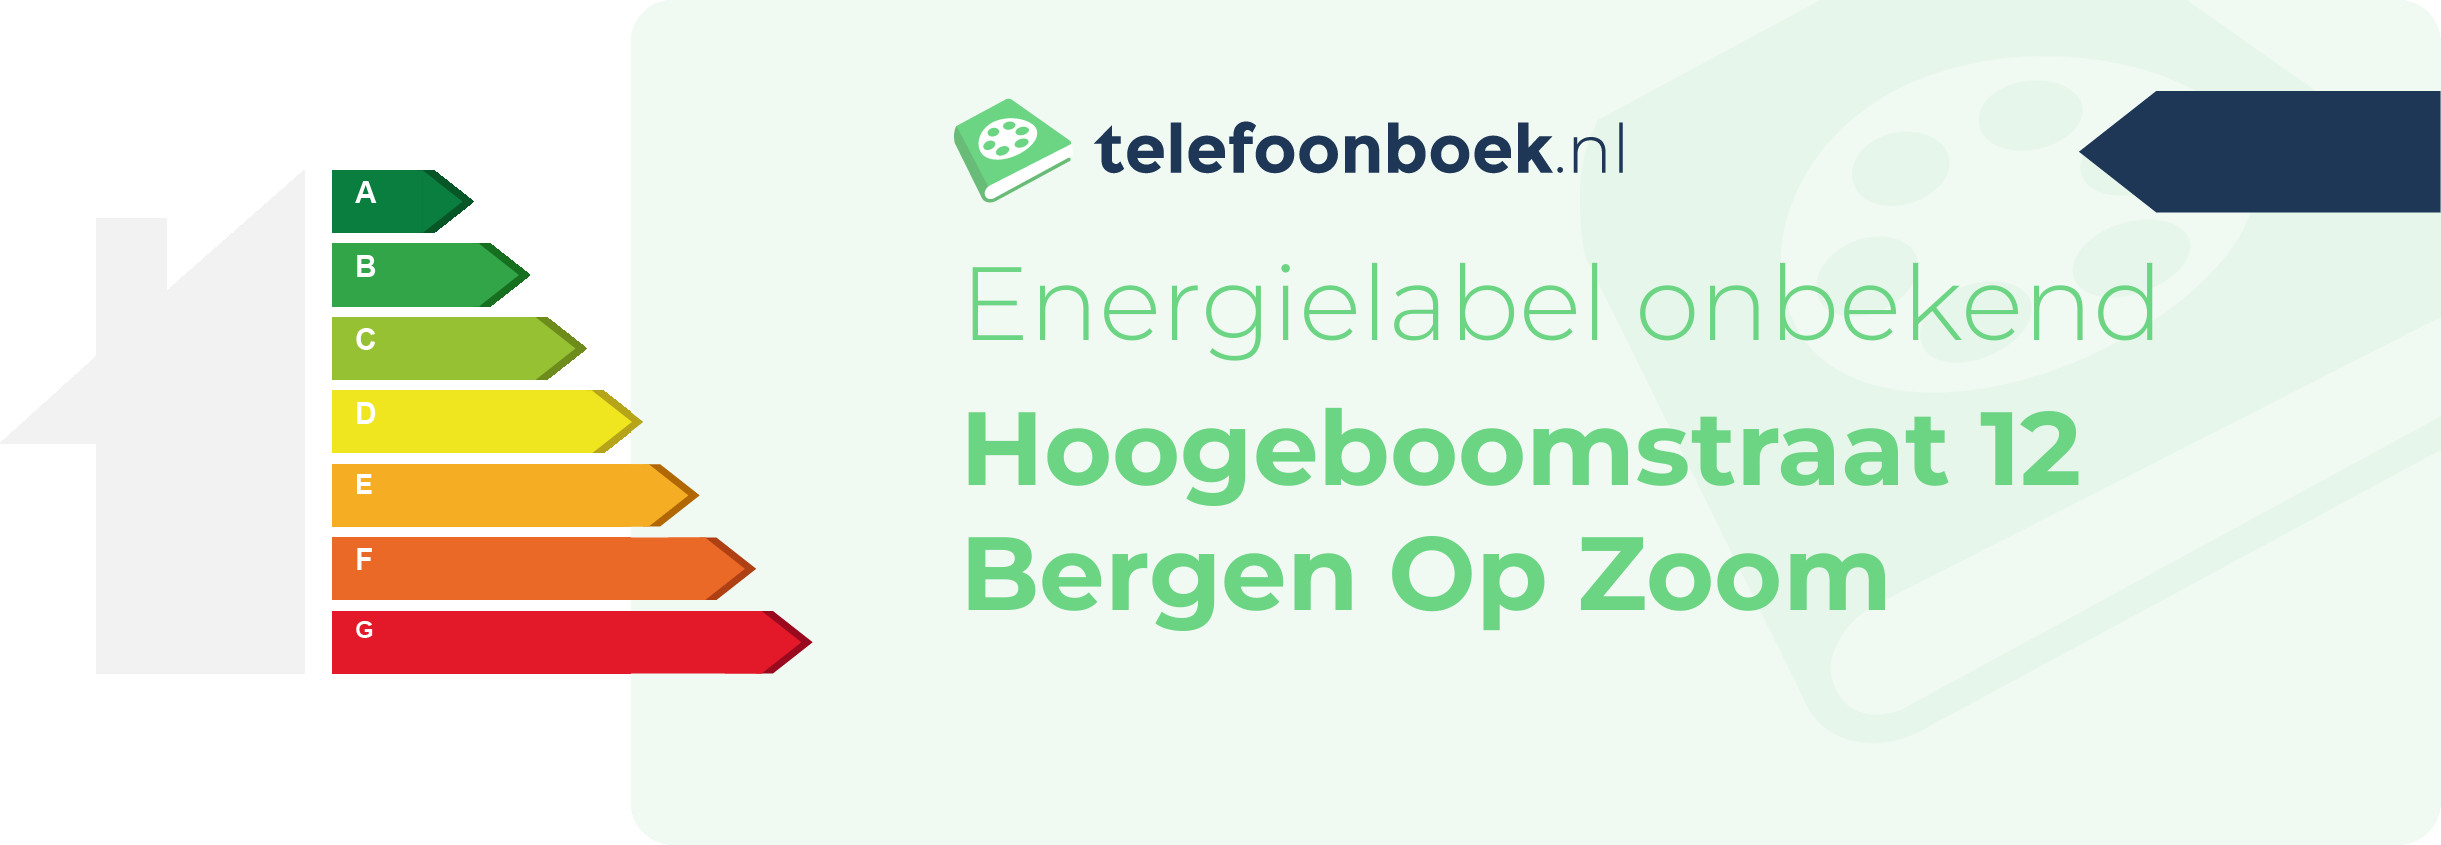 Energielabel Hoogeboomstraat 12 Bergen Op Zoom